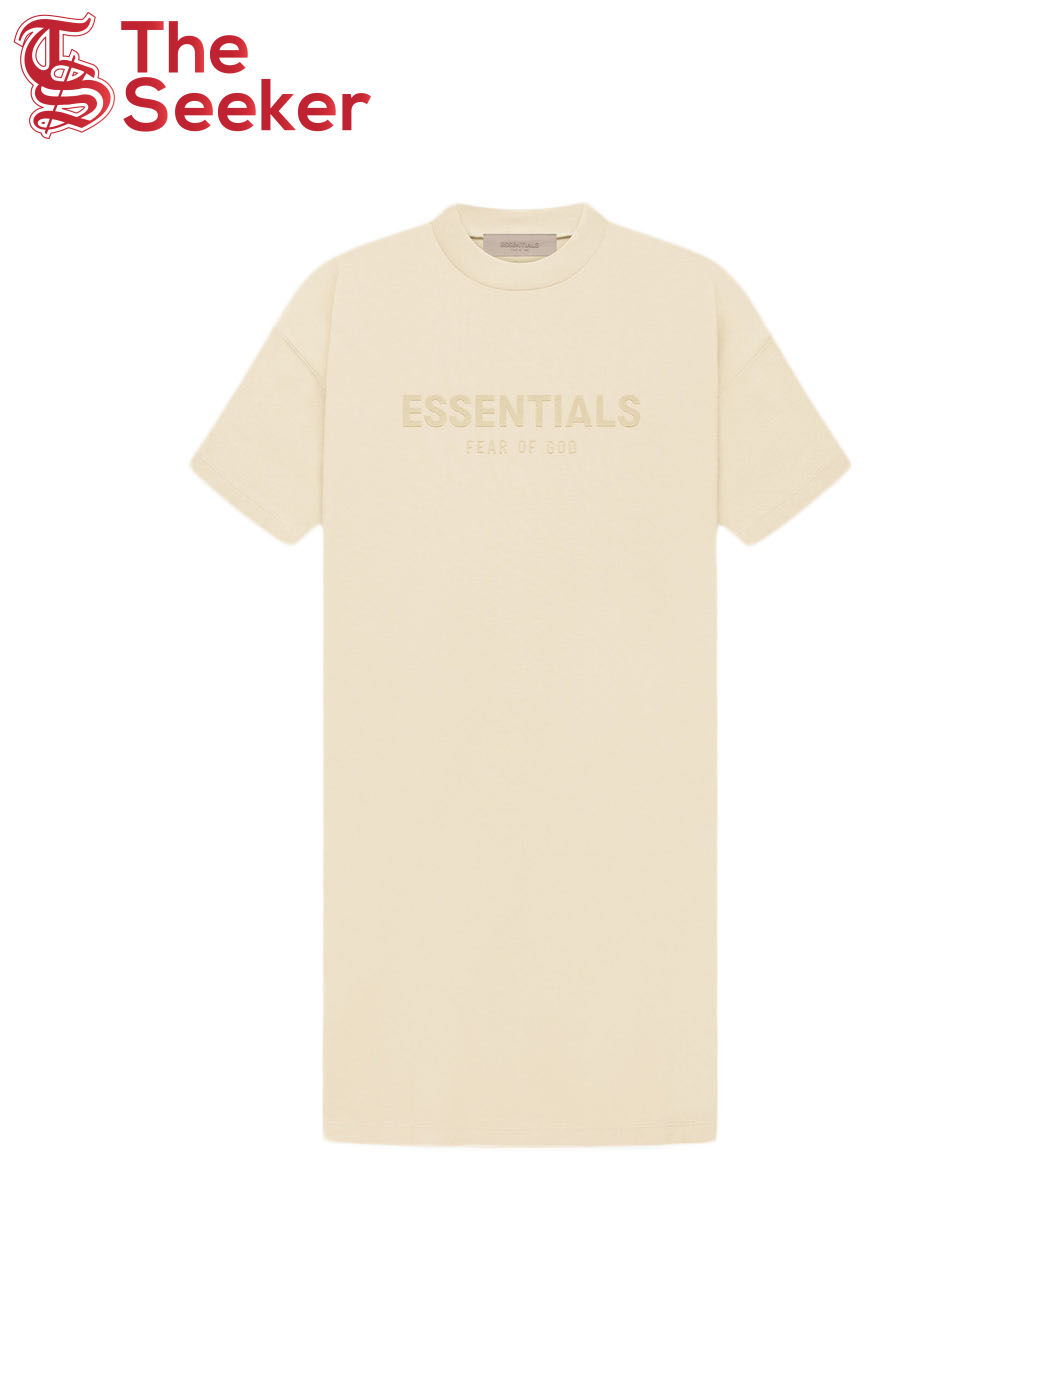 Fear of God Essentials Women's T-shirt Dress Egg Shell